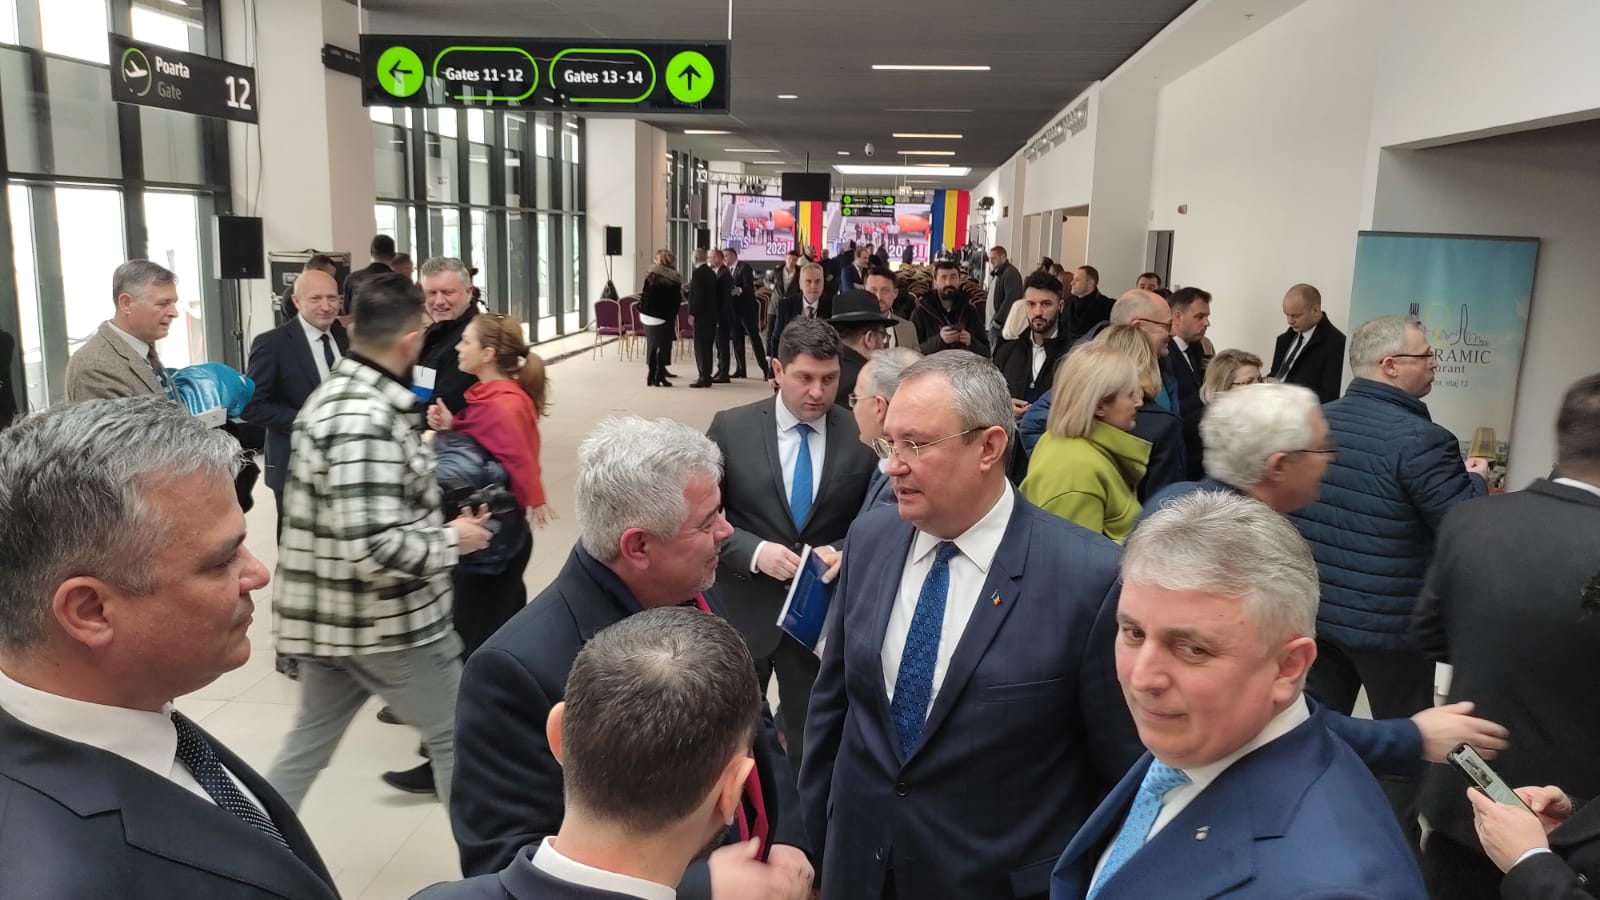 Aeroportul Iași, terminal nou pentru politicieni